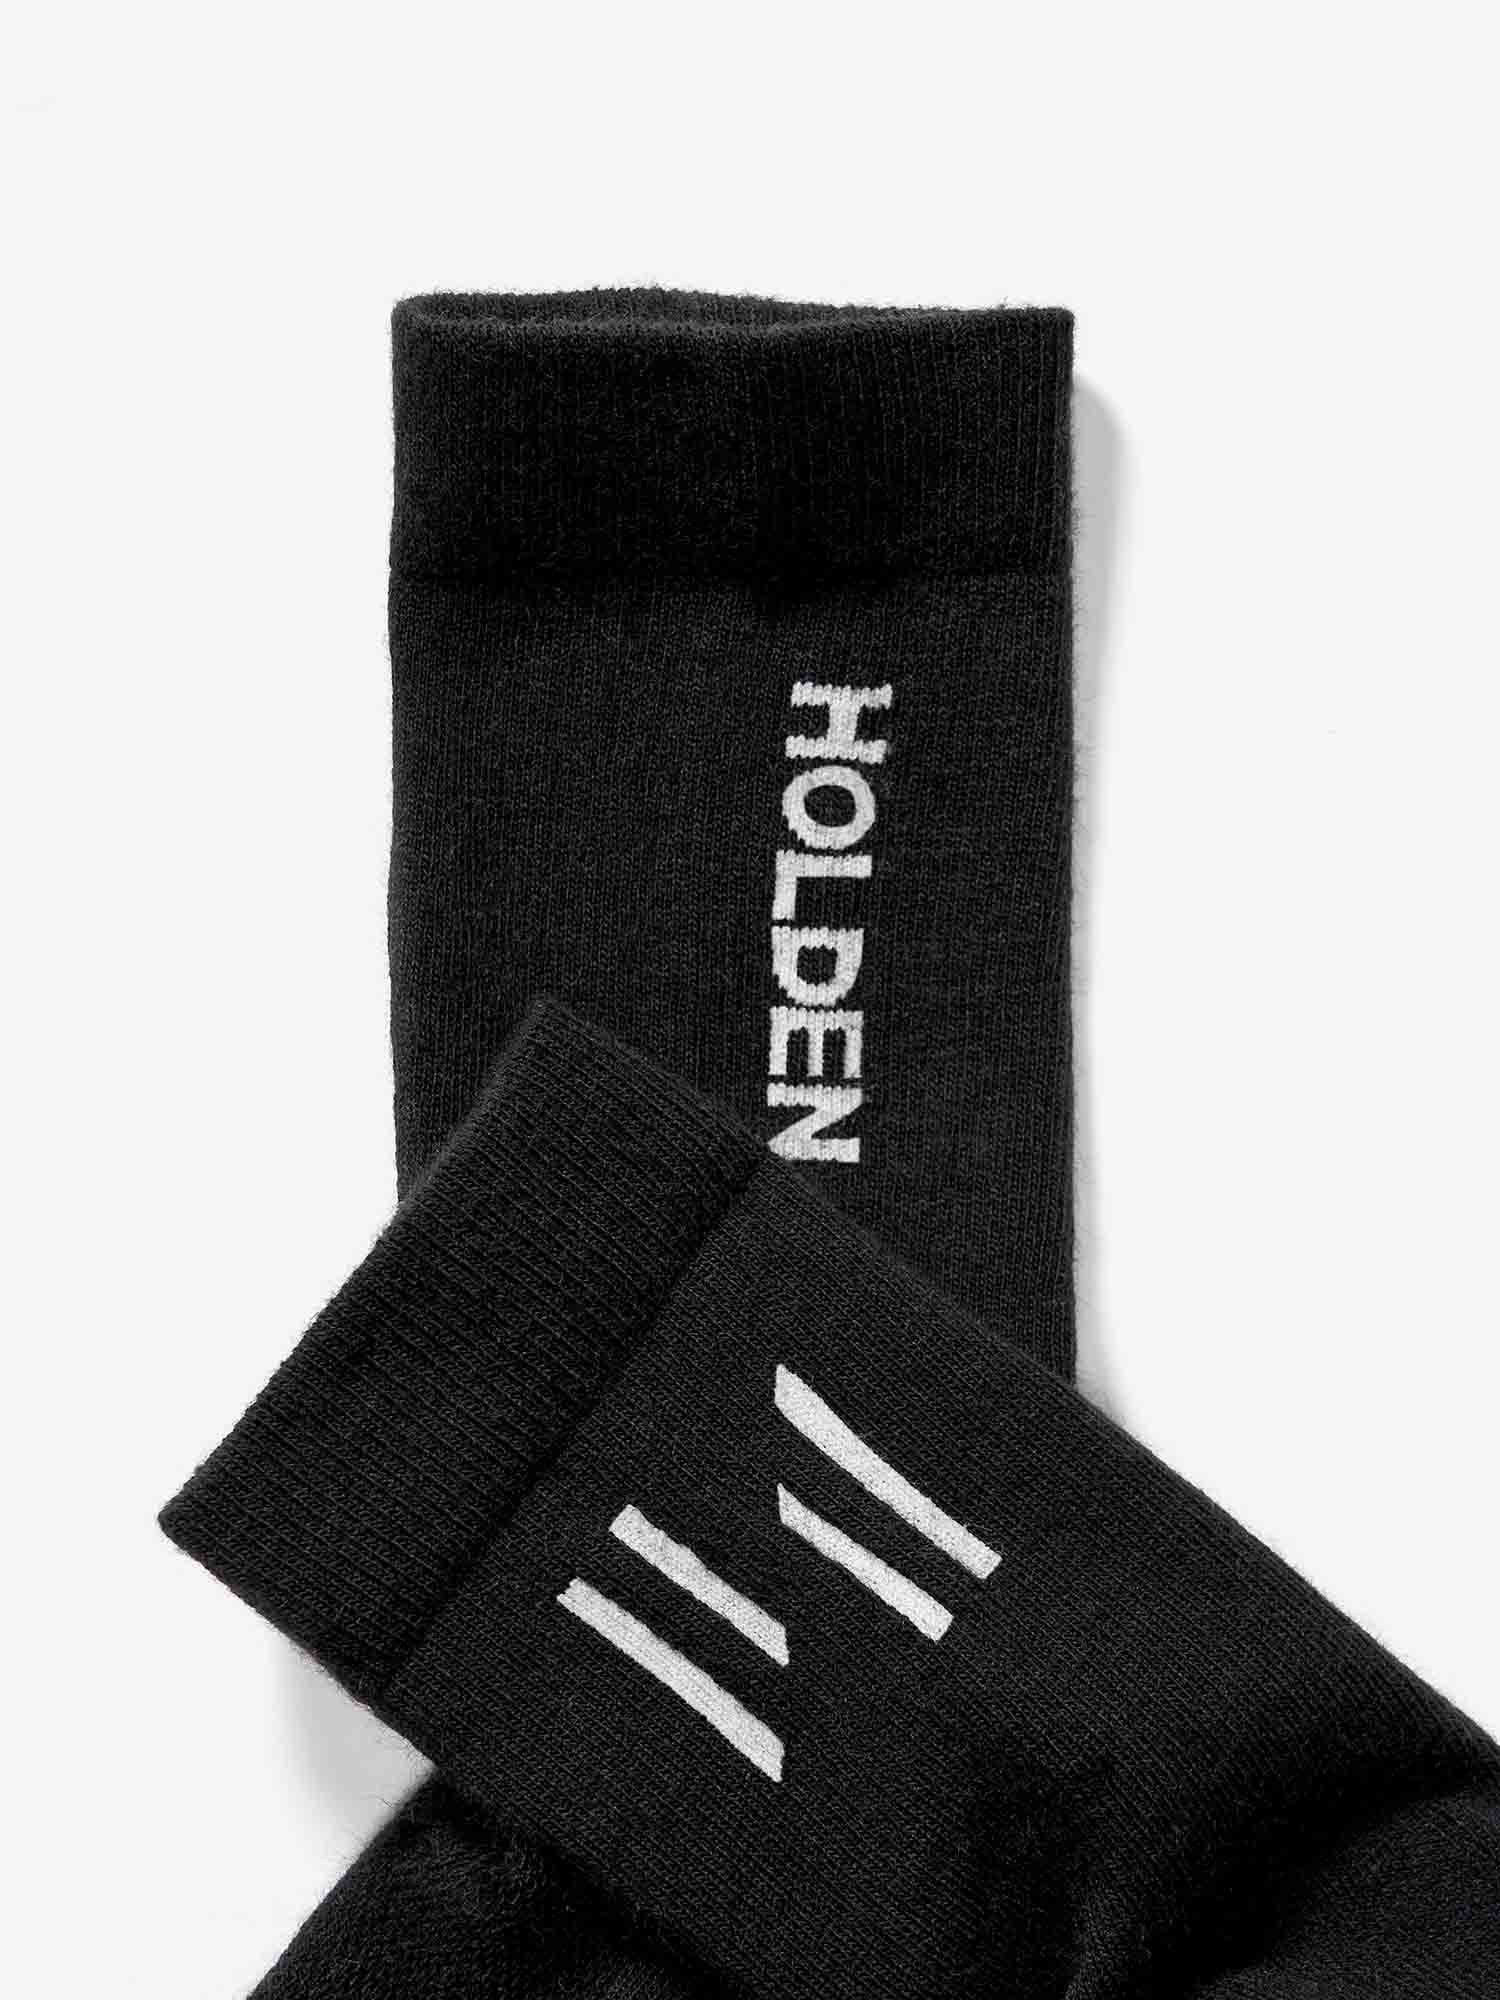 Merino Performance Sock - Black - logo detail